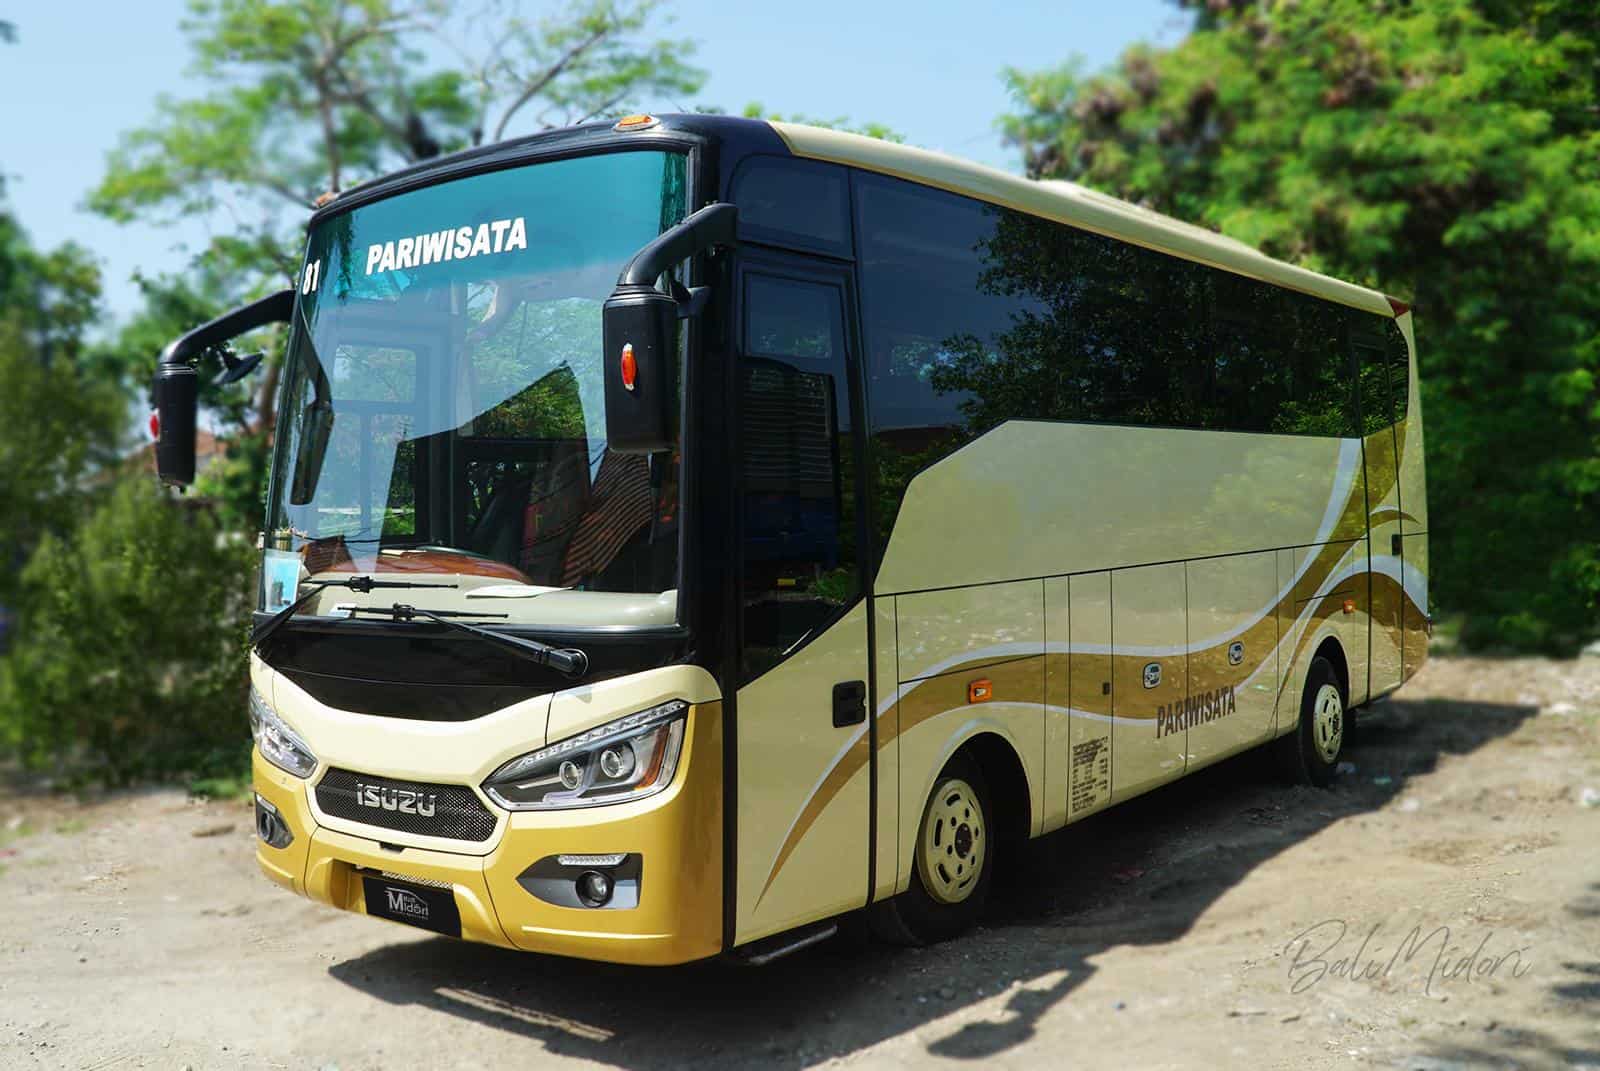 Di chuyển từ sân bay về trung tâm Bali bằng xe bus